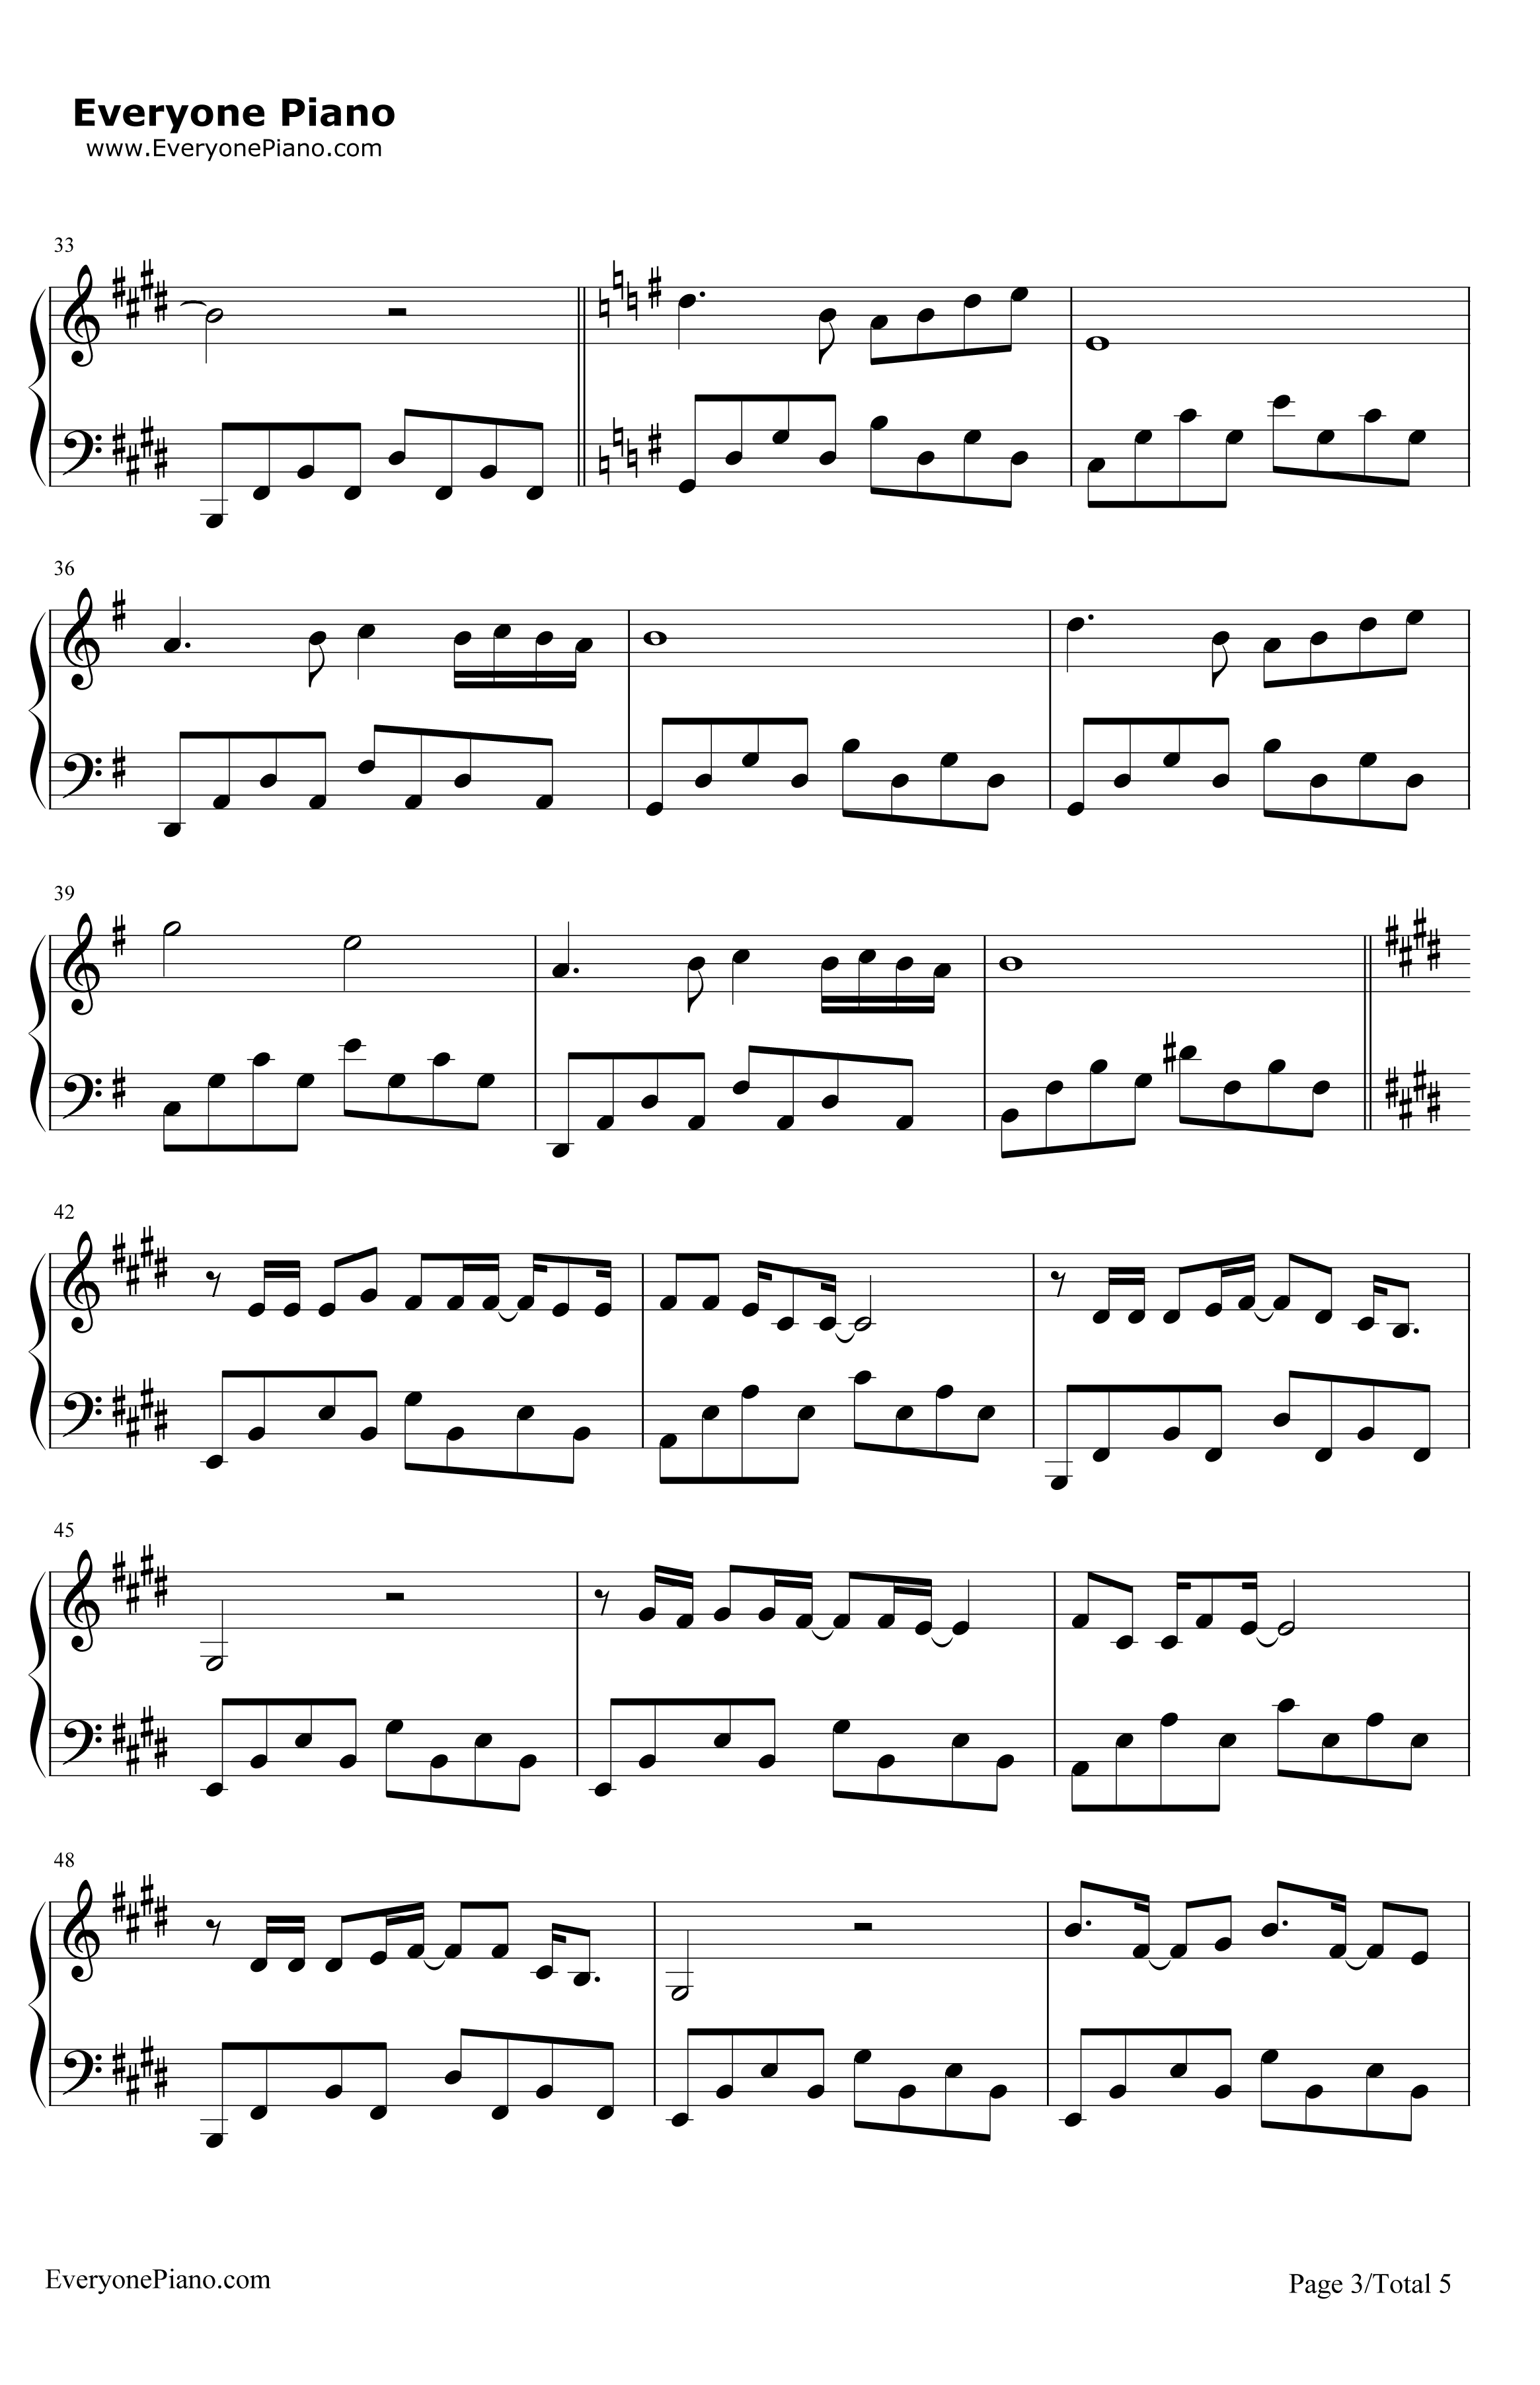 传奇钢琴谱-王菲3